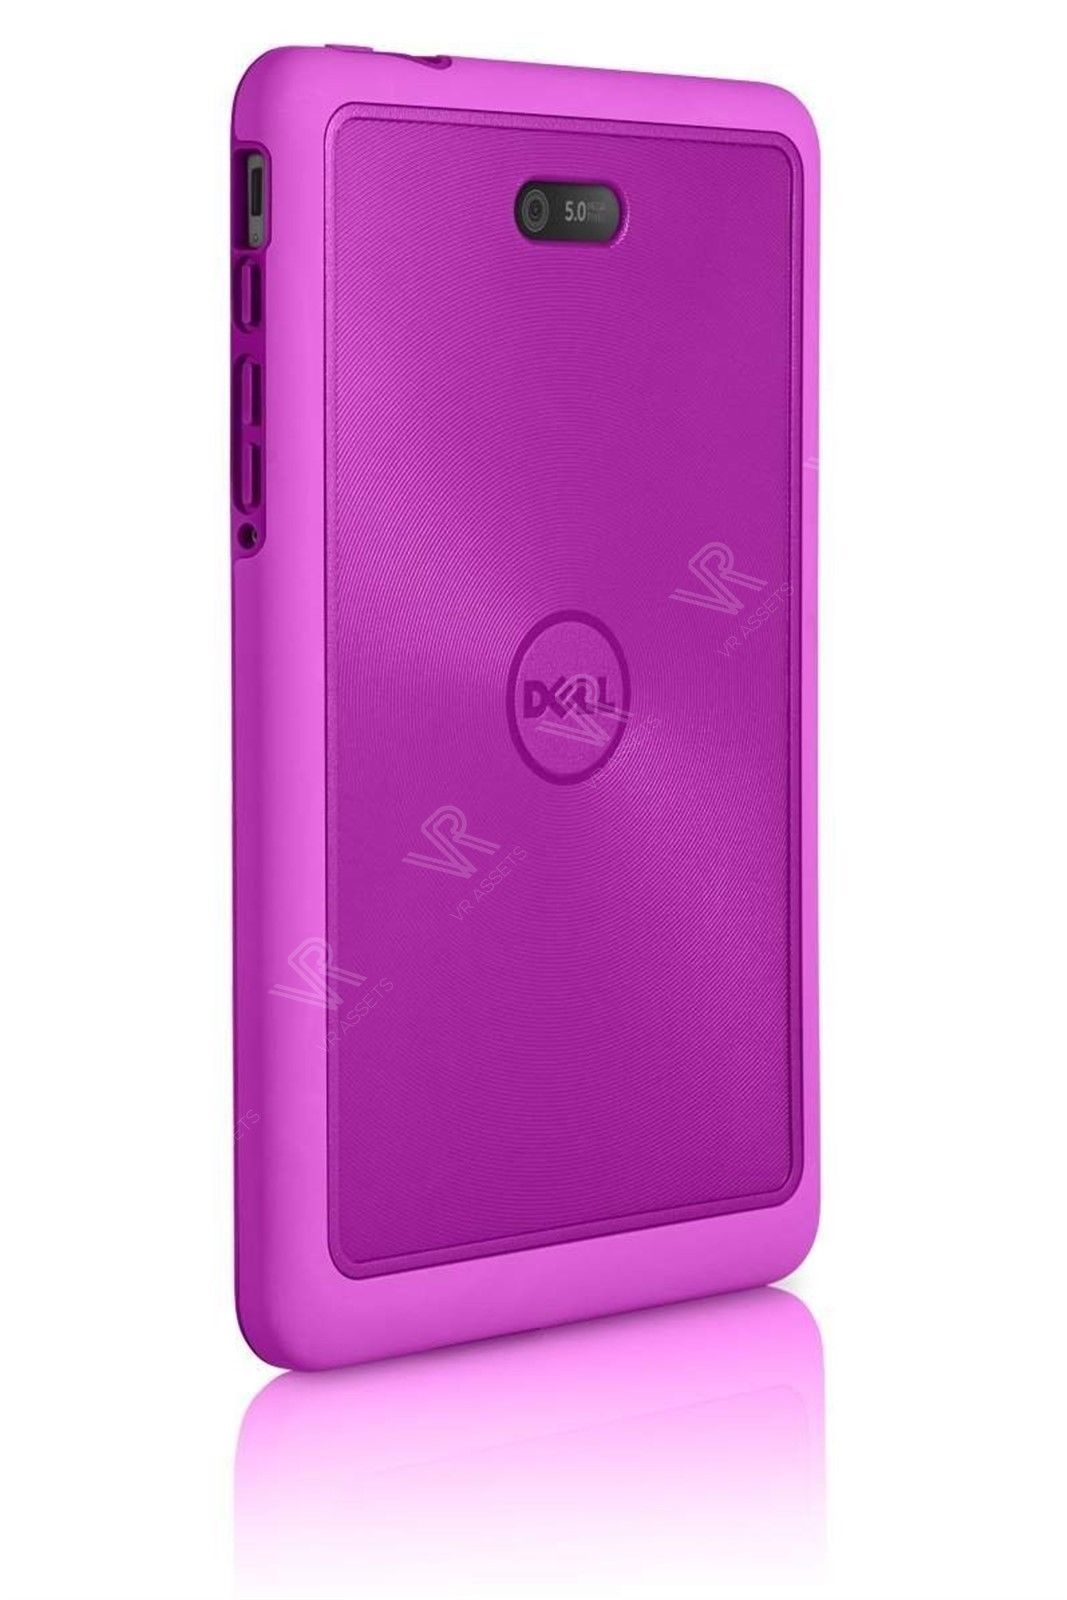 Dell Venue 8 Pro 3845 5830 Tablet Duo Case Plum Rubber 5TWMT 05TWMT New